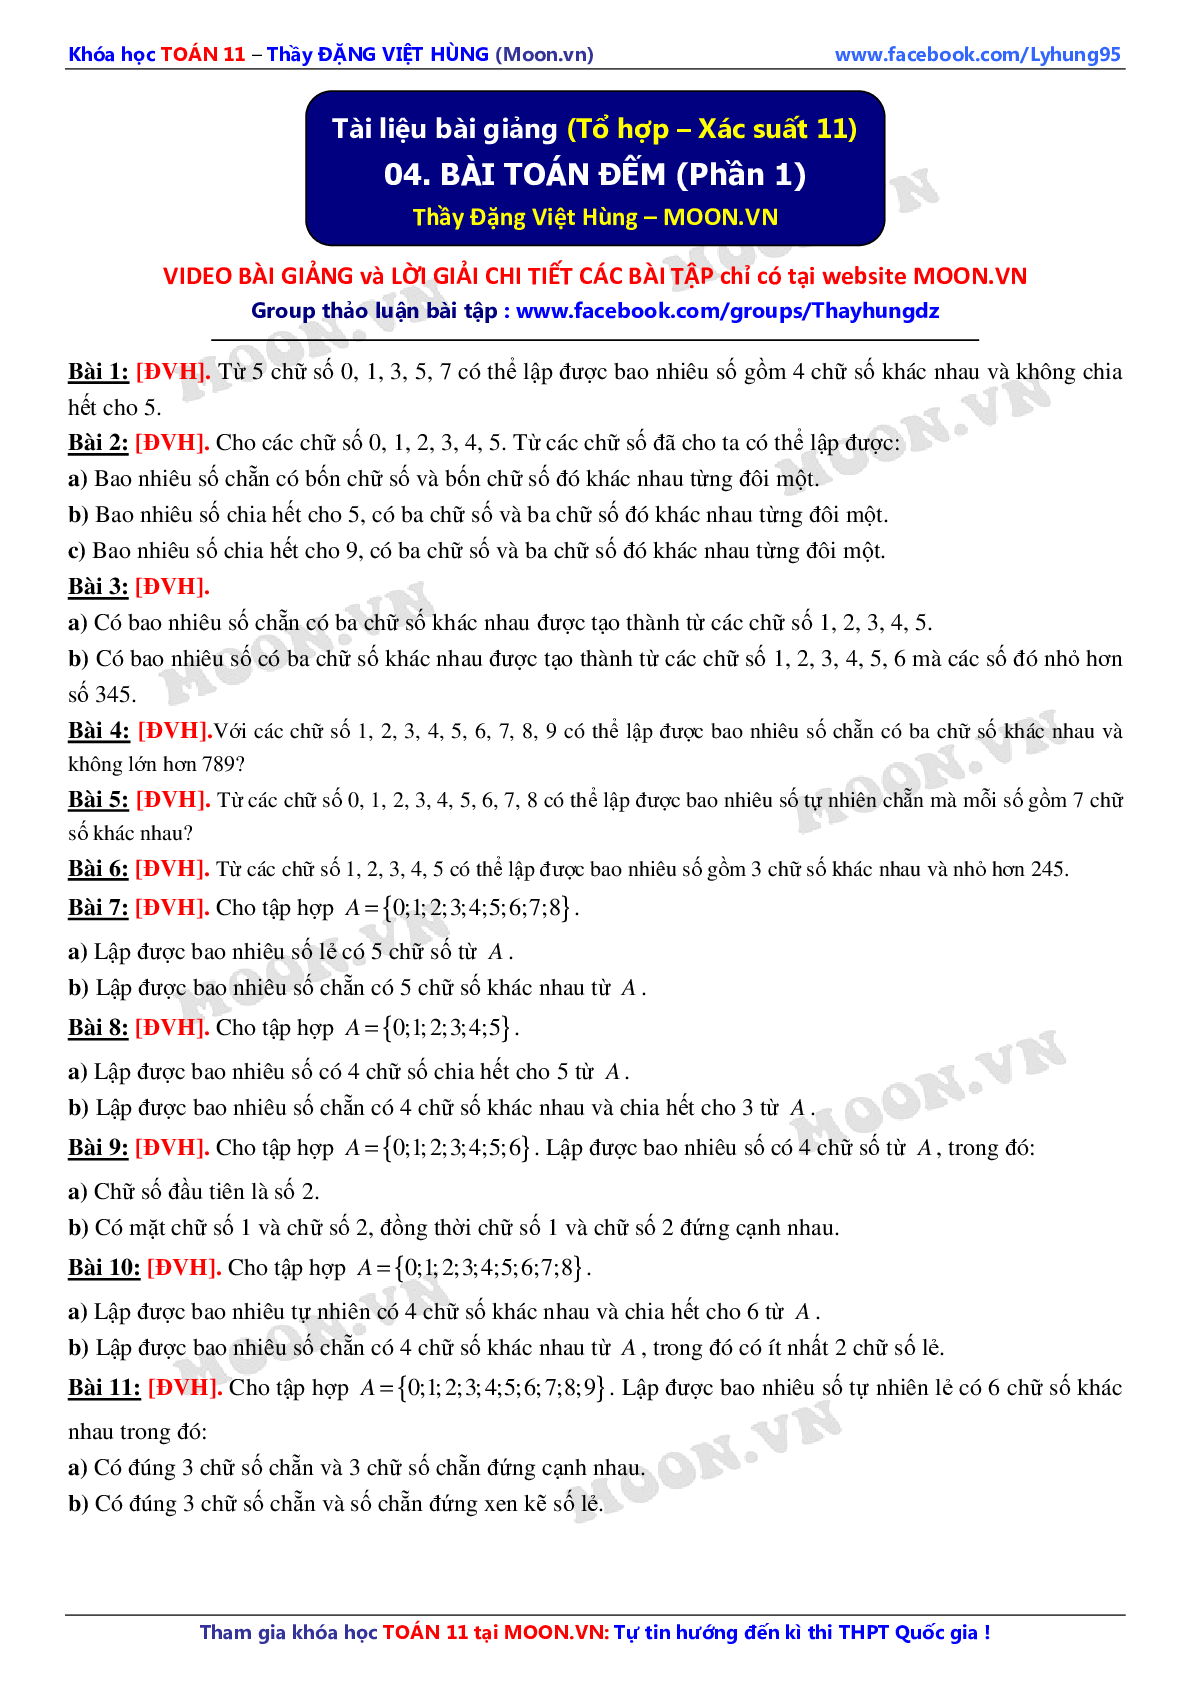 Chuyên đề Bài toán đếm môn Toán lớp 11 (trang 1)